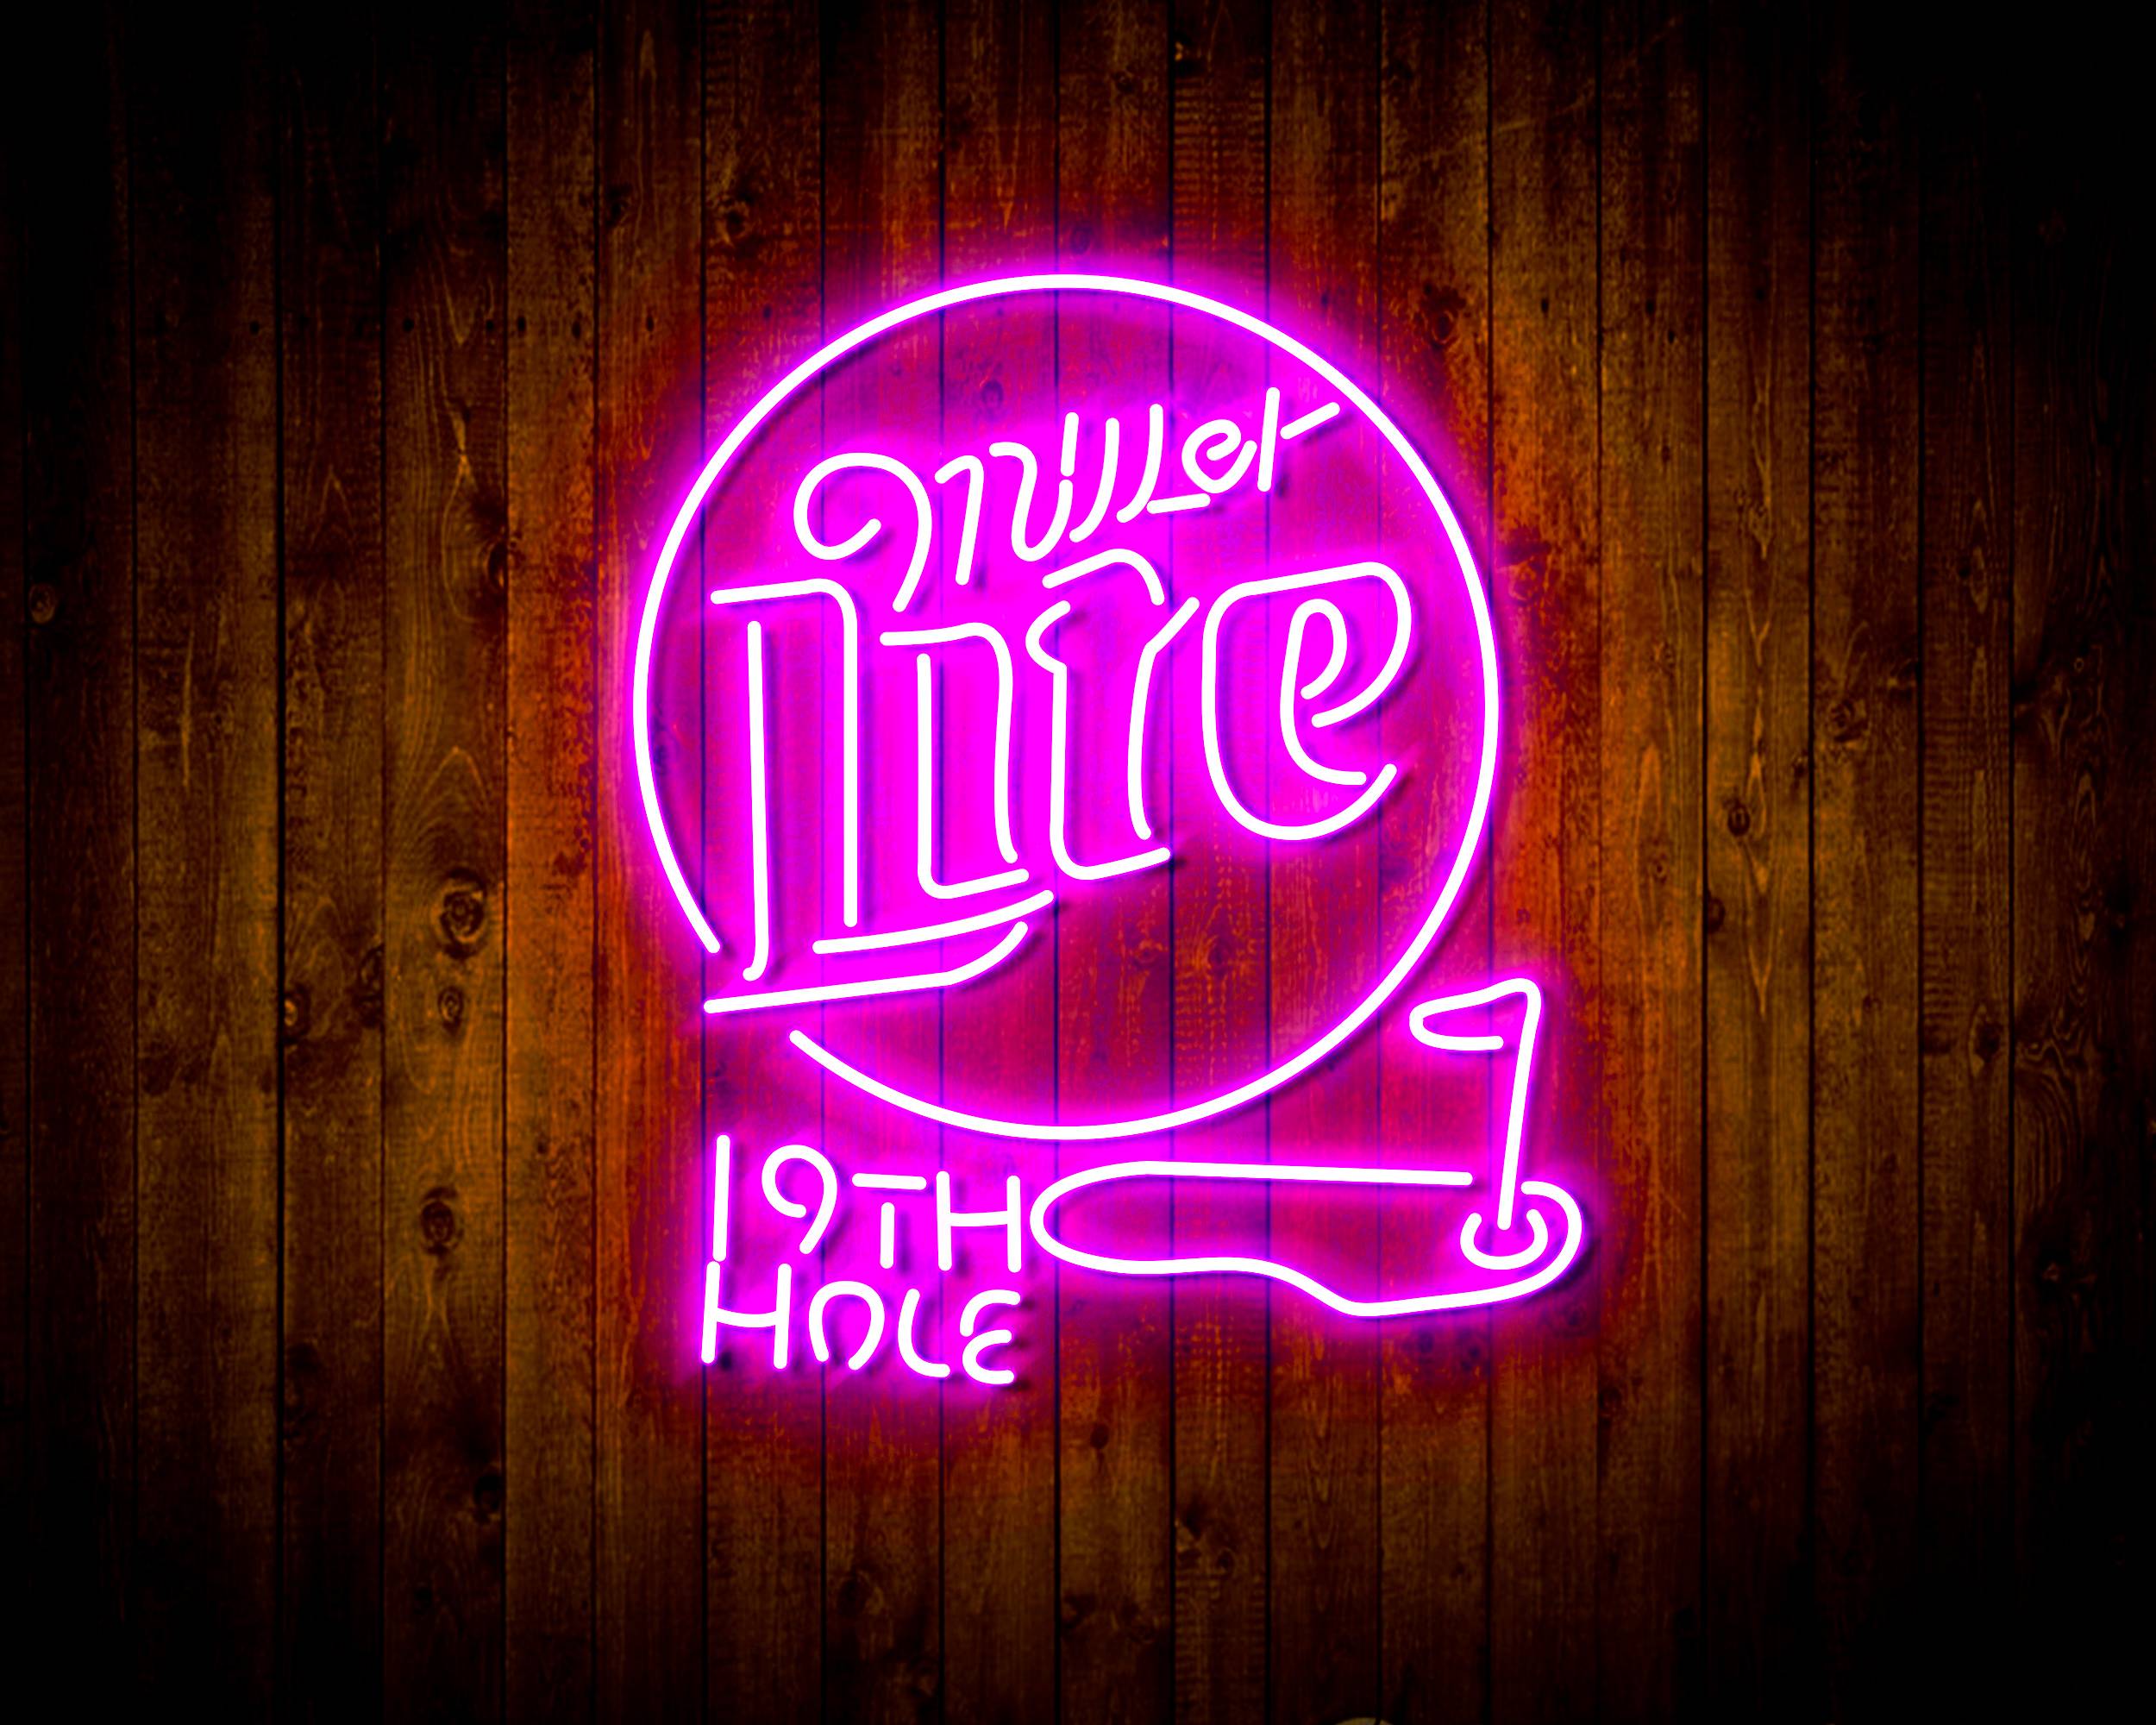 Miller Lite 19th Hole Handmade Neon Flex LED Sign